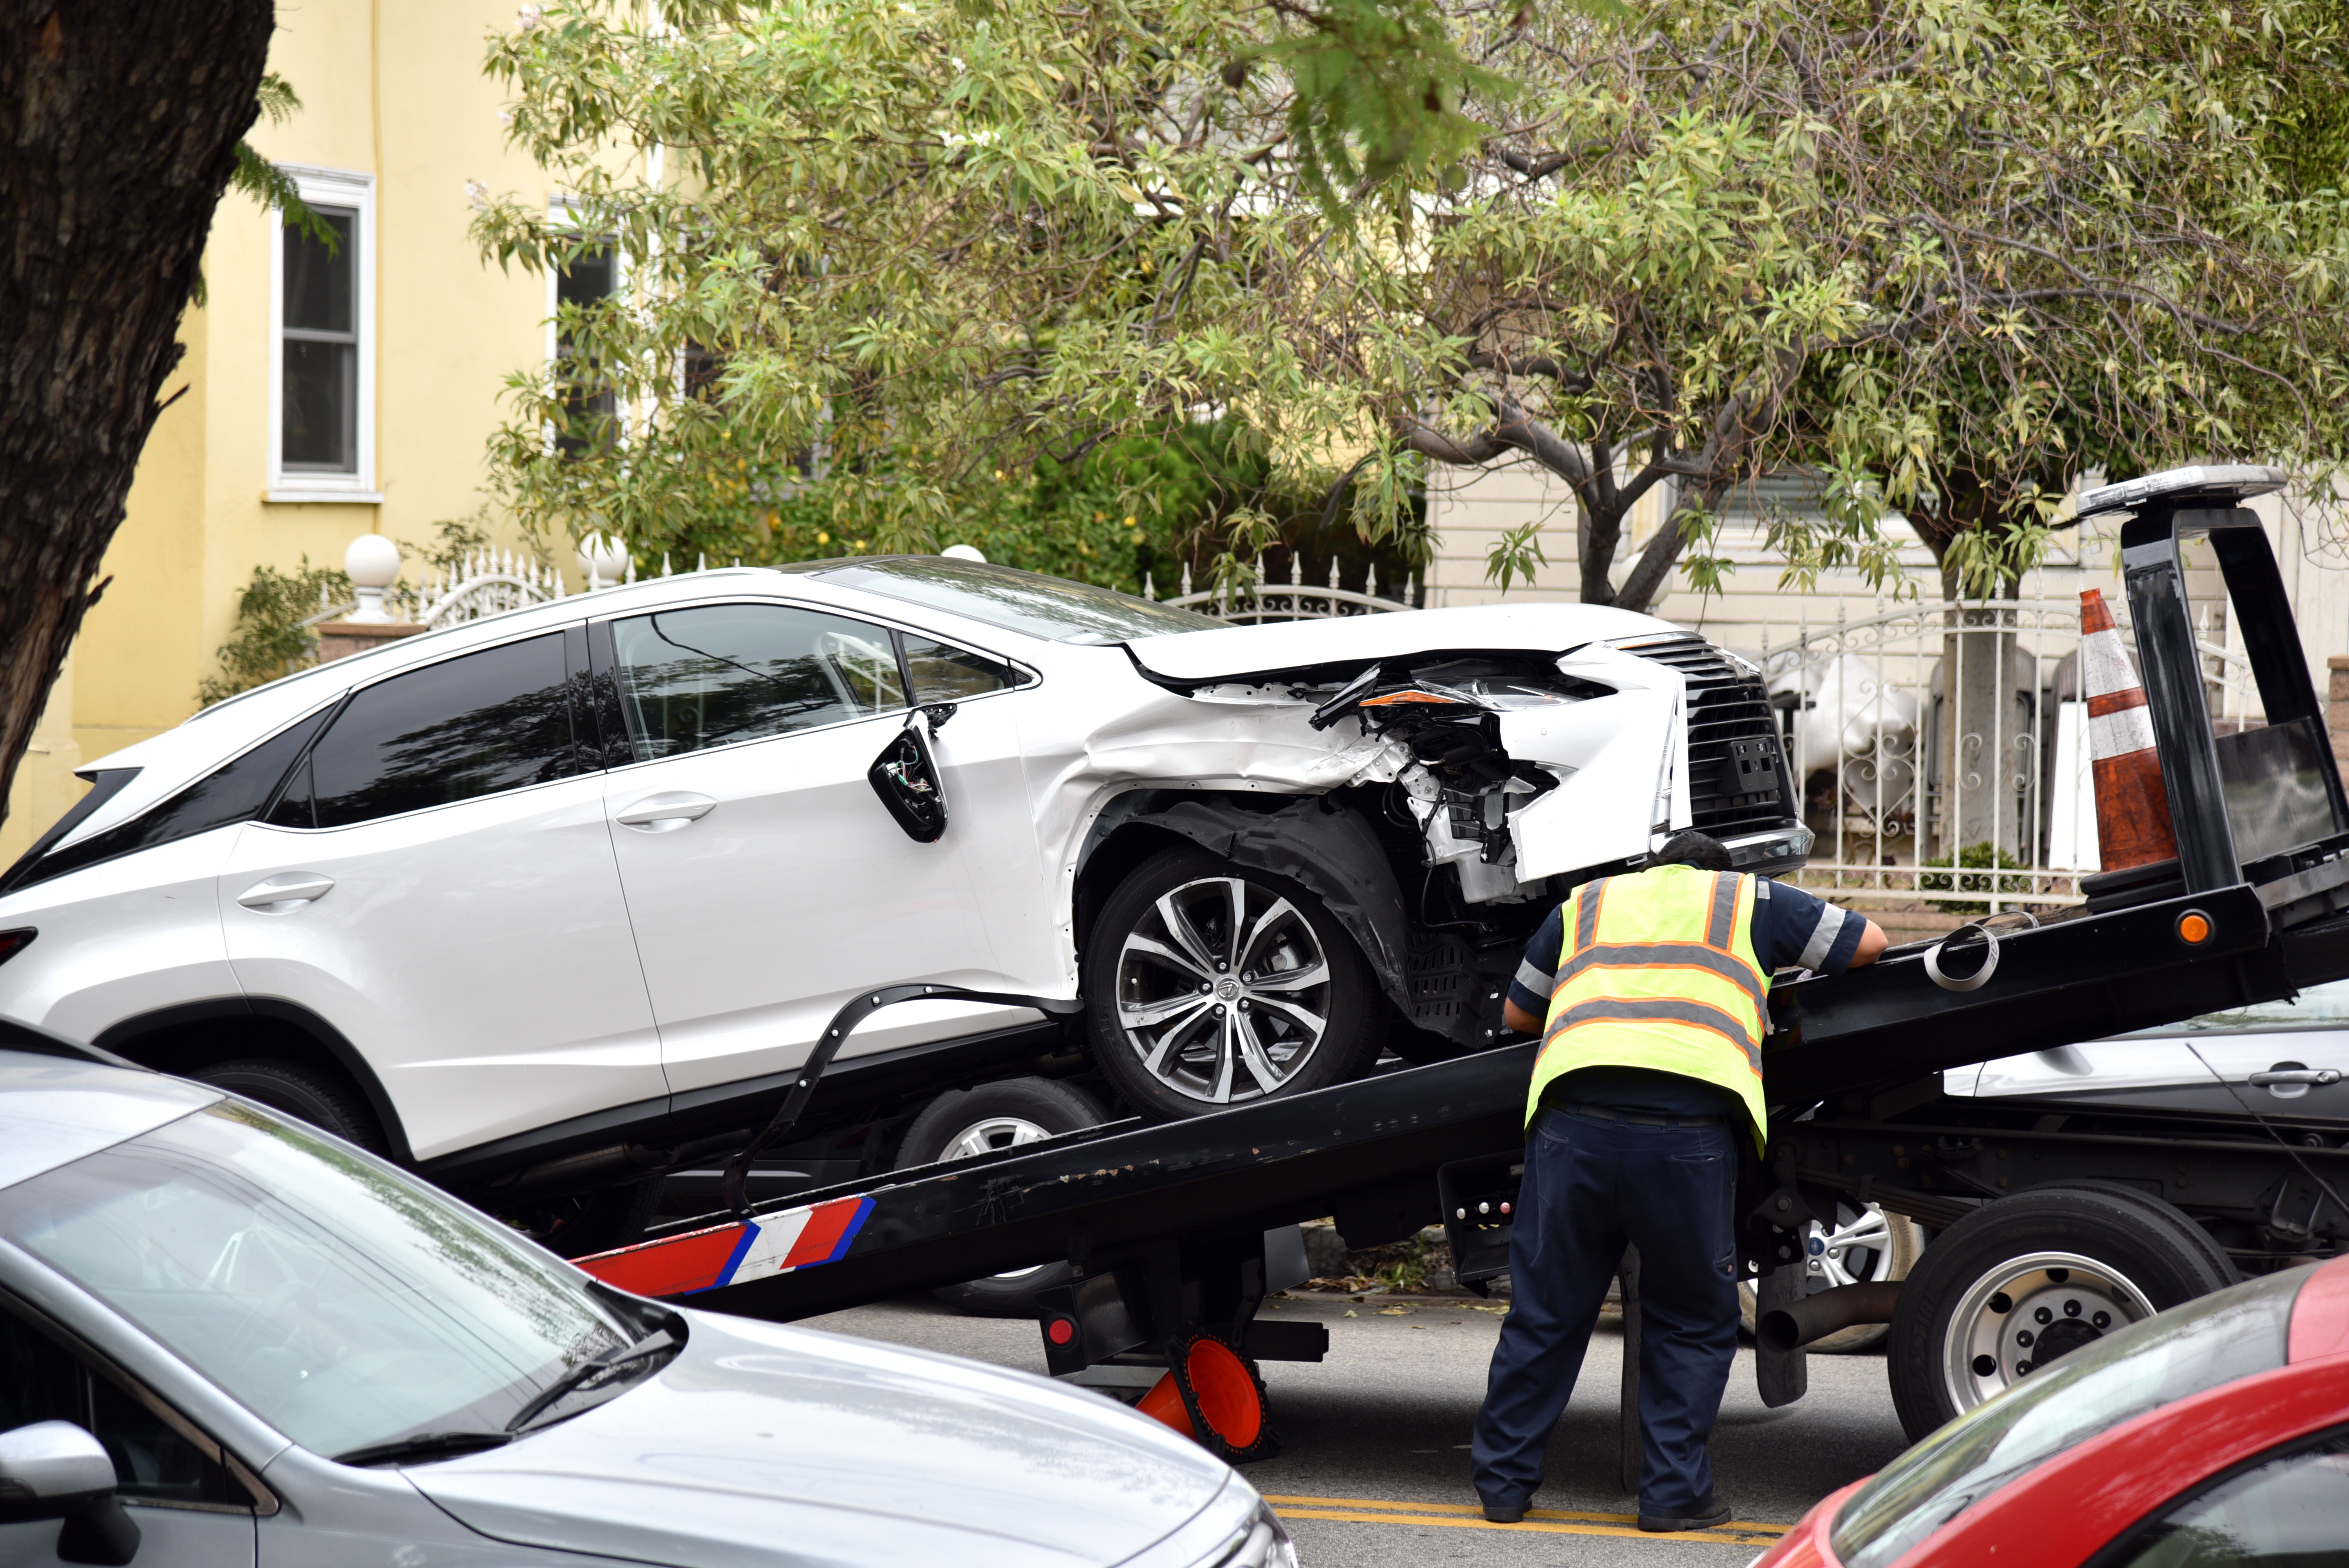 Ein Abschleppwagenfahrer schleppt ein beschädigtes Auto ab. | Quelle: Shutterstock